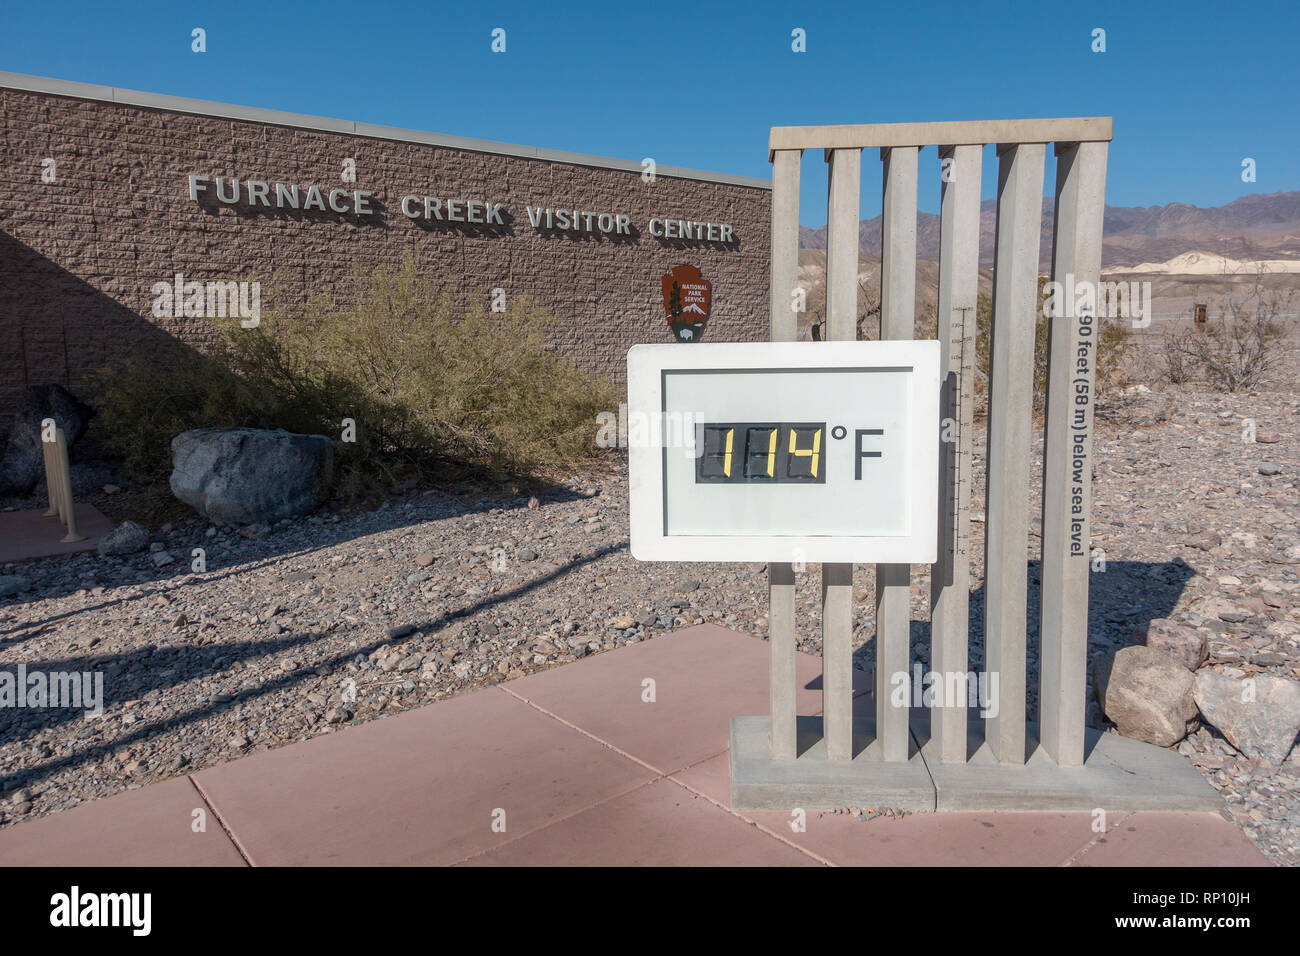 Temperaturanzeige angezeigt 114 ℉ (45,6°C) außerhalb der Furnace Creek Visitor Centre, Furnace Creek, Kalifornien, USA. Stockfoto